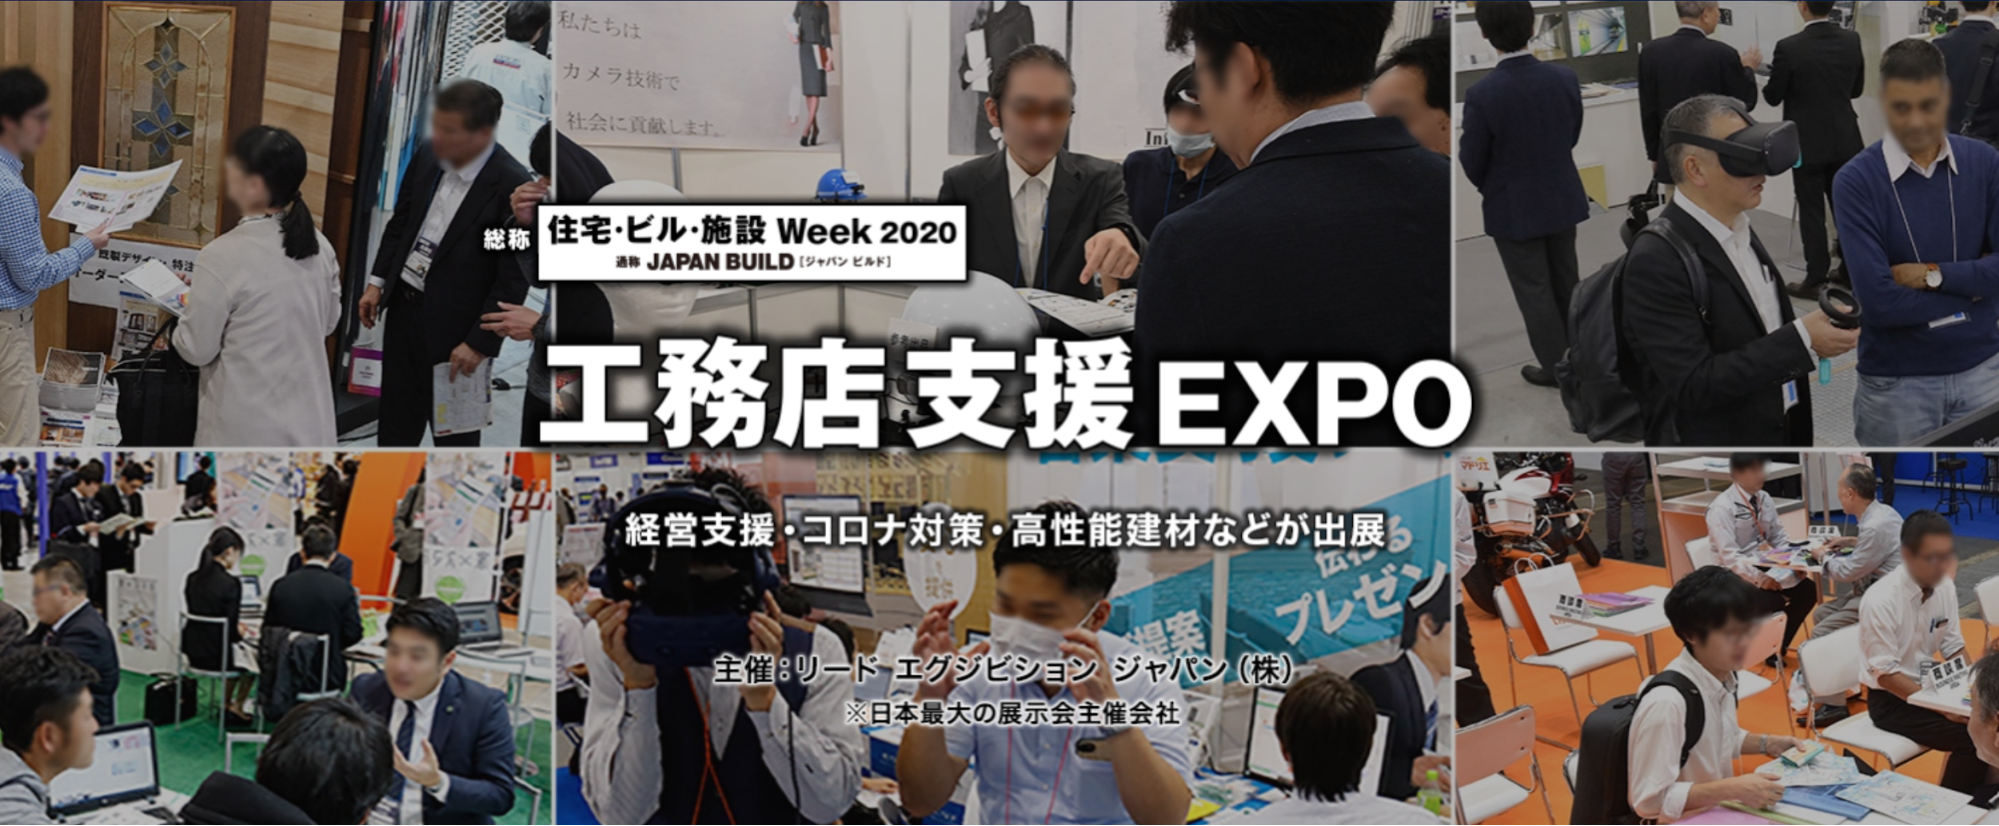 工務店支援 EXPO